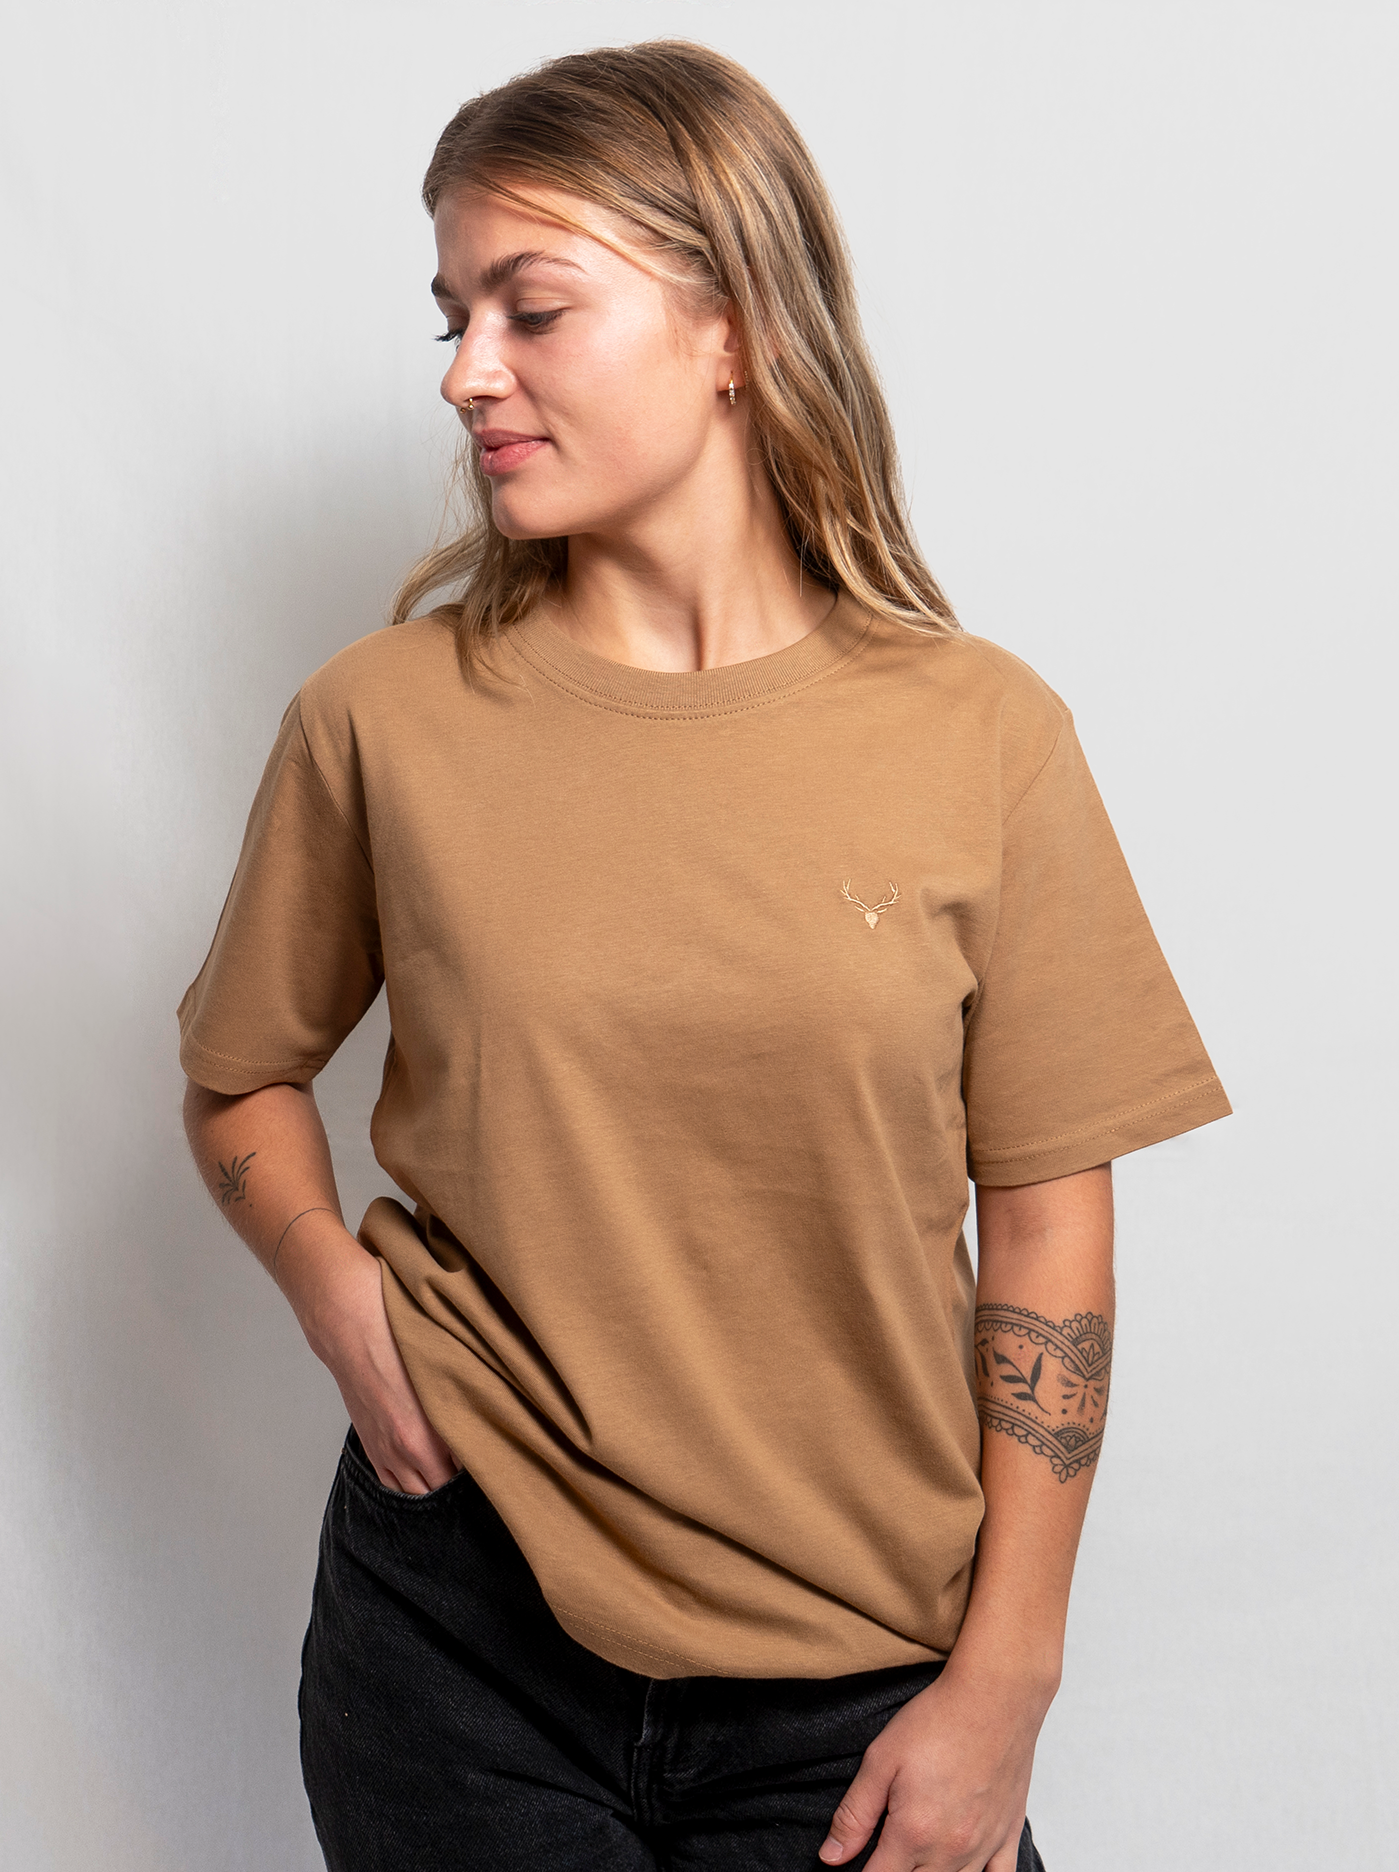 Unisex Shirt - Camel